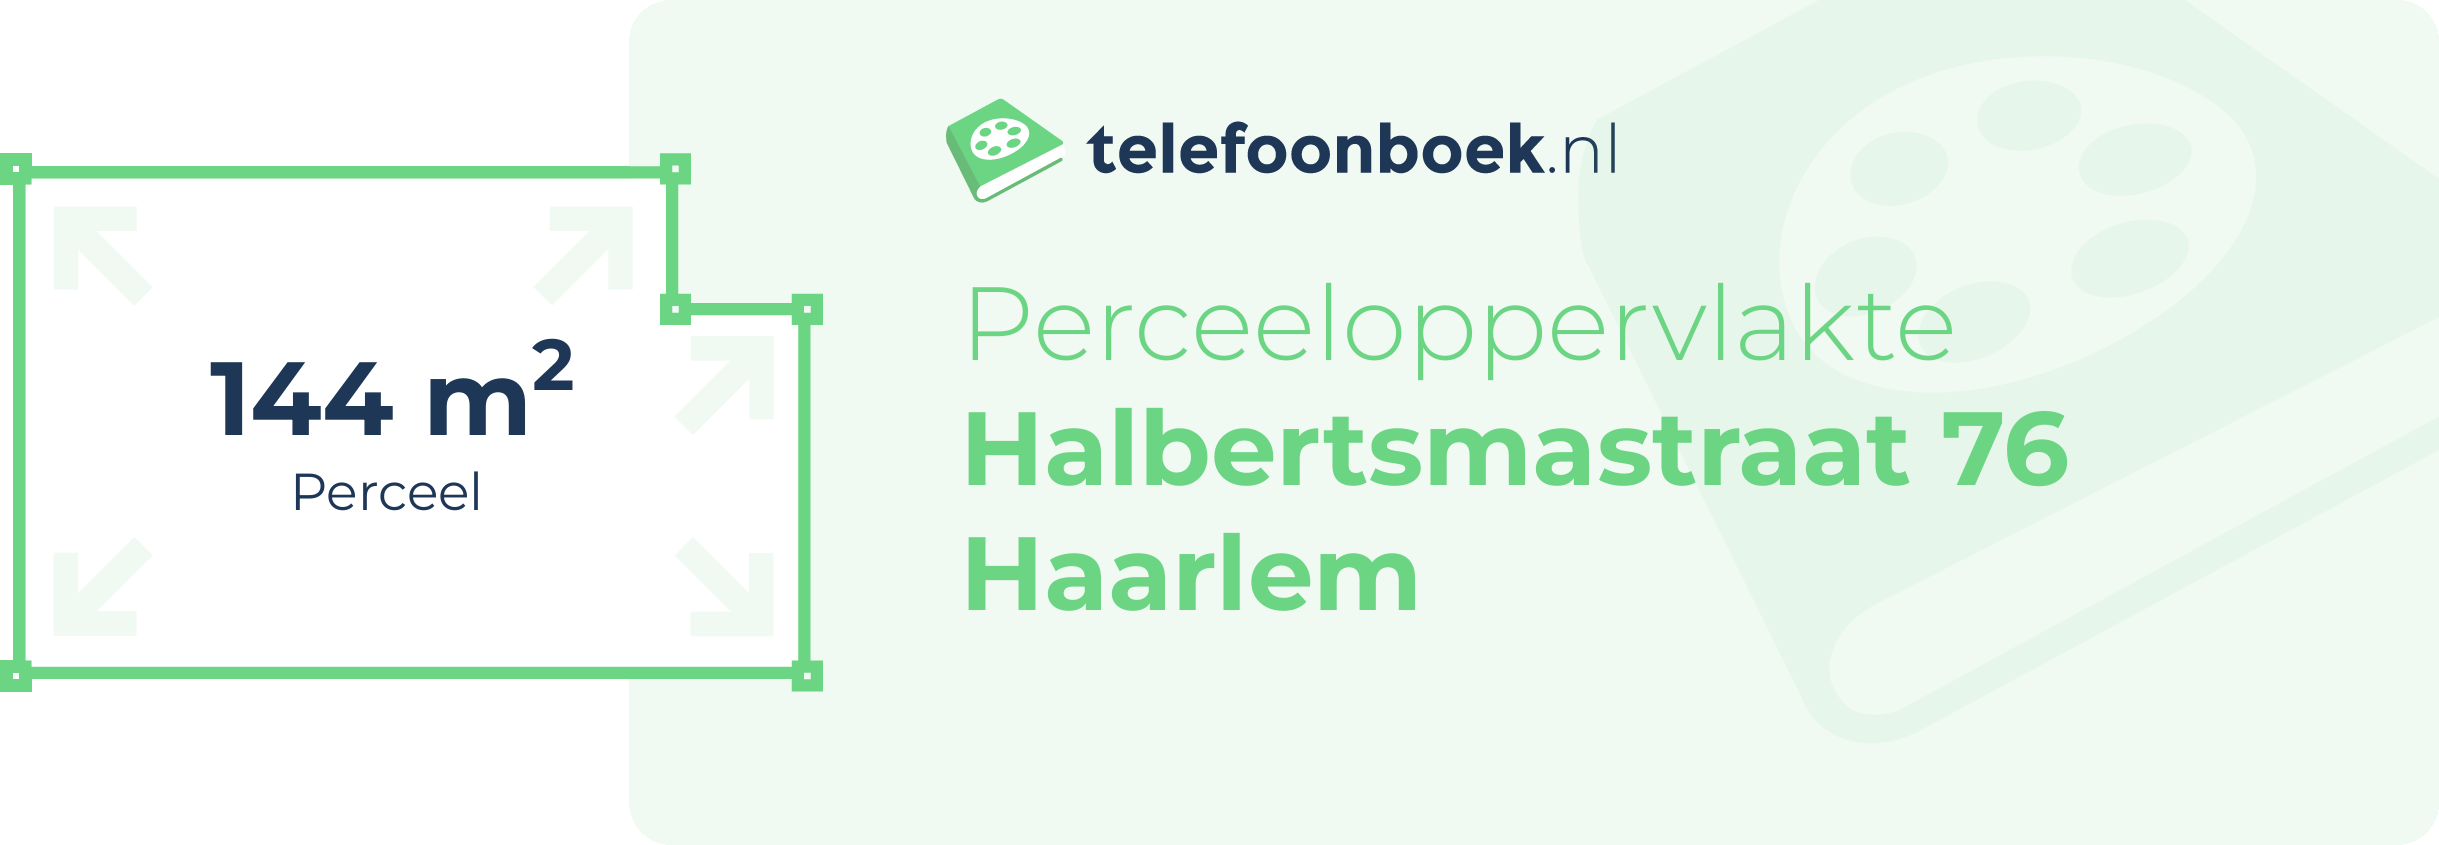 Perceeloppervlakte Halbertsmastraat 76 Haarlem